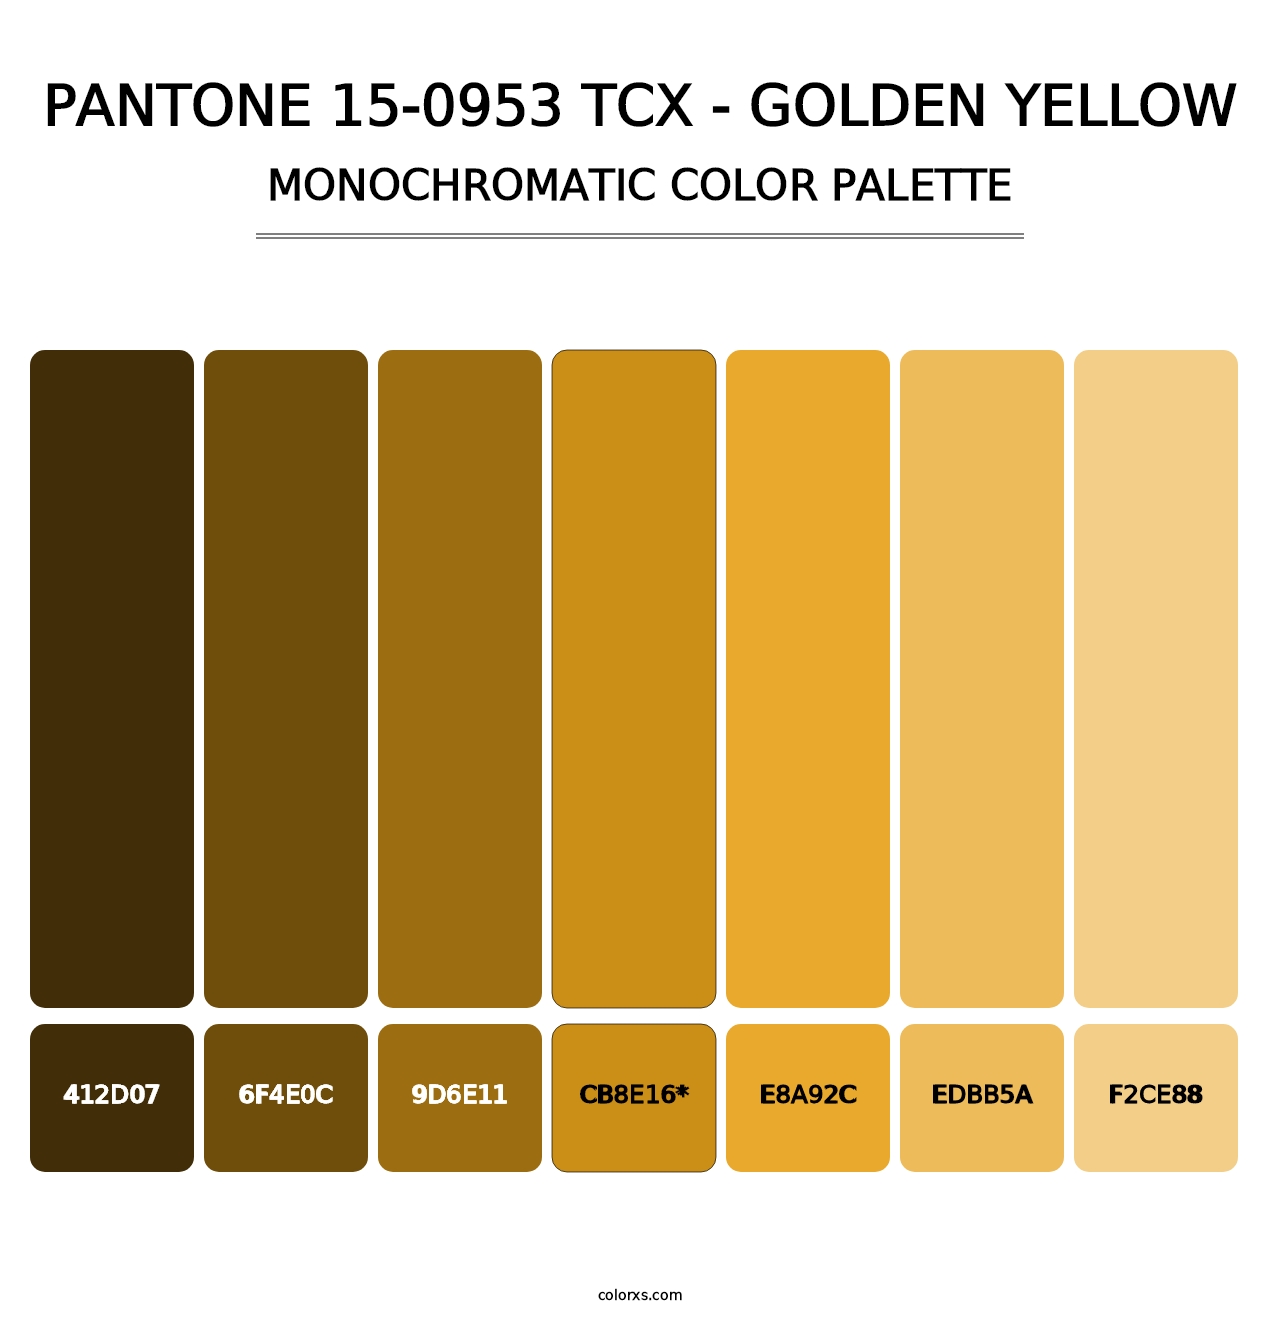 PANTONE 15-0953 TCX - Golden Yellow - Monochromatic Color Palette